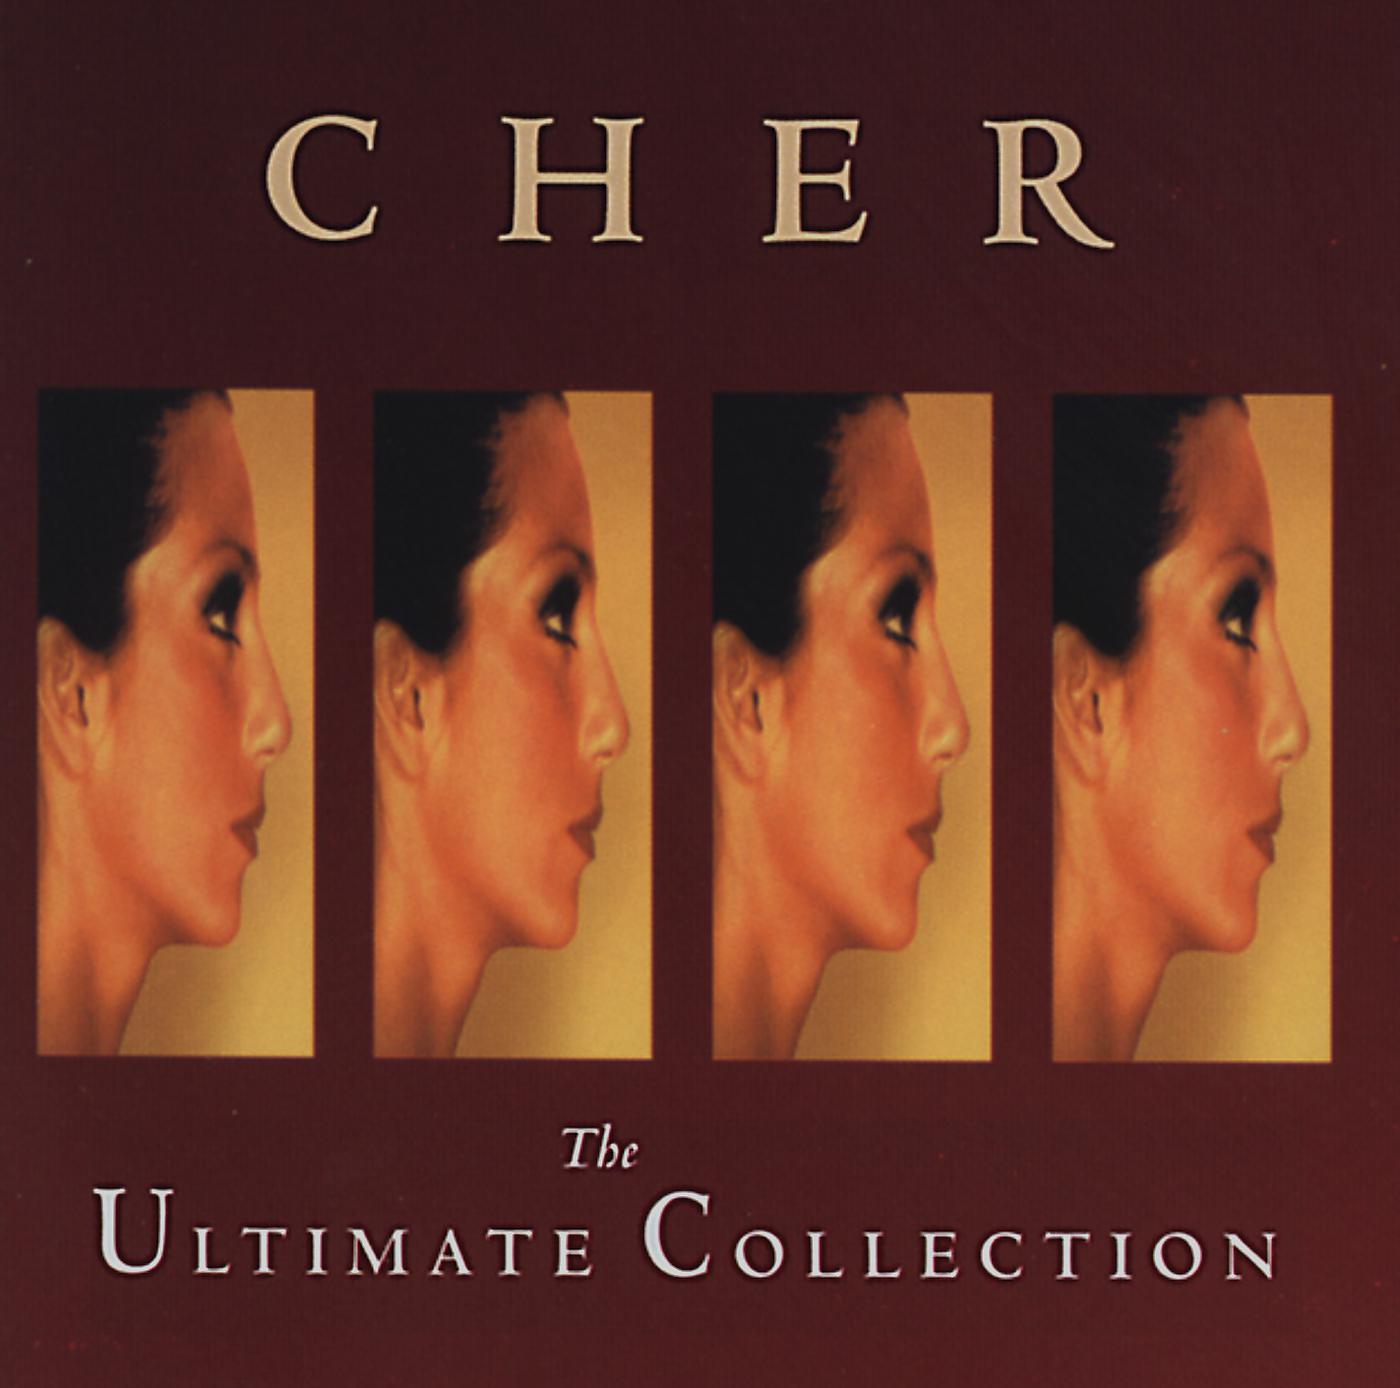 Альбом The Ultimate Collection исполнителя Cher